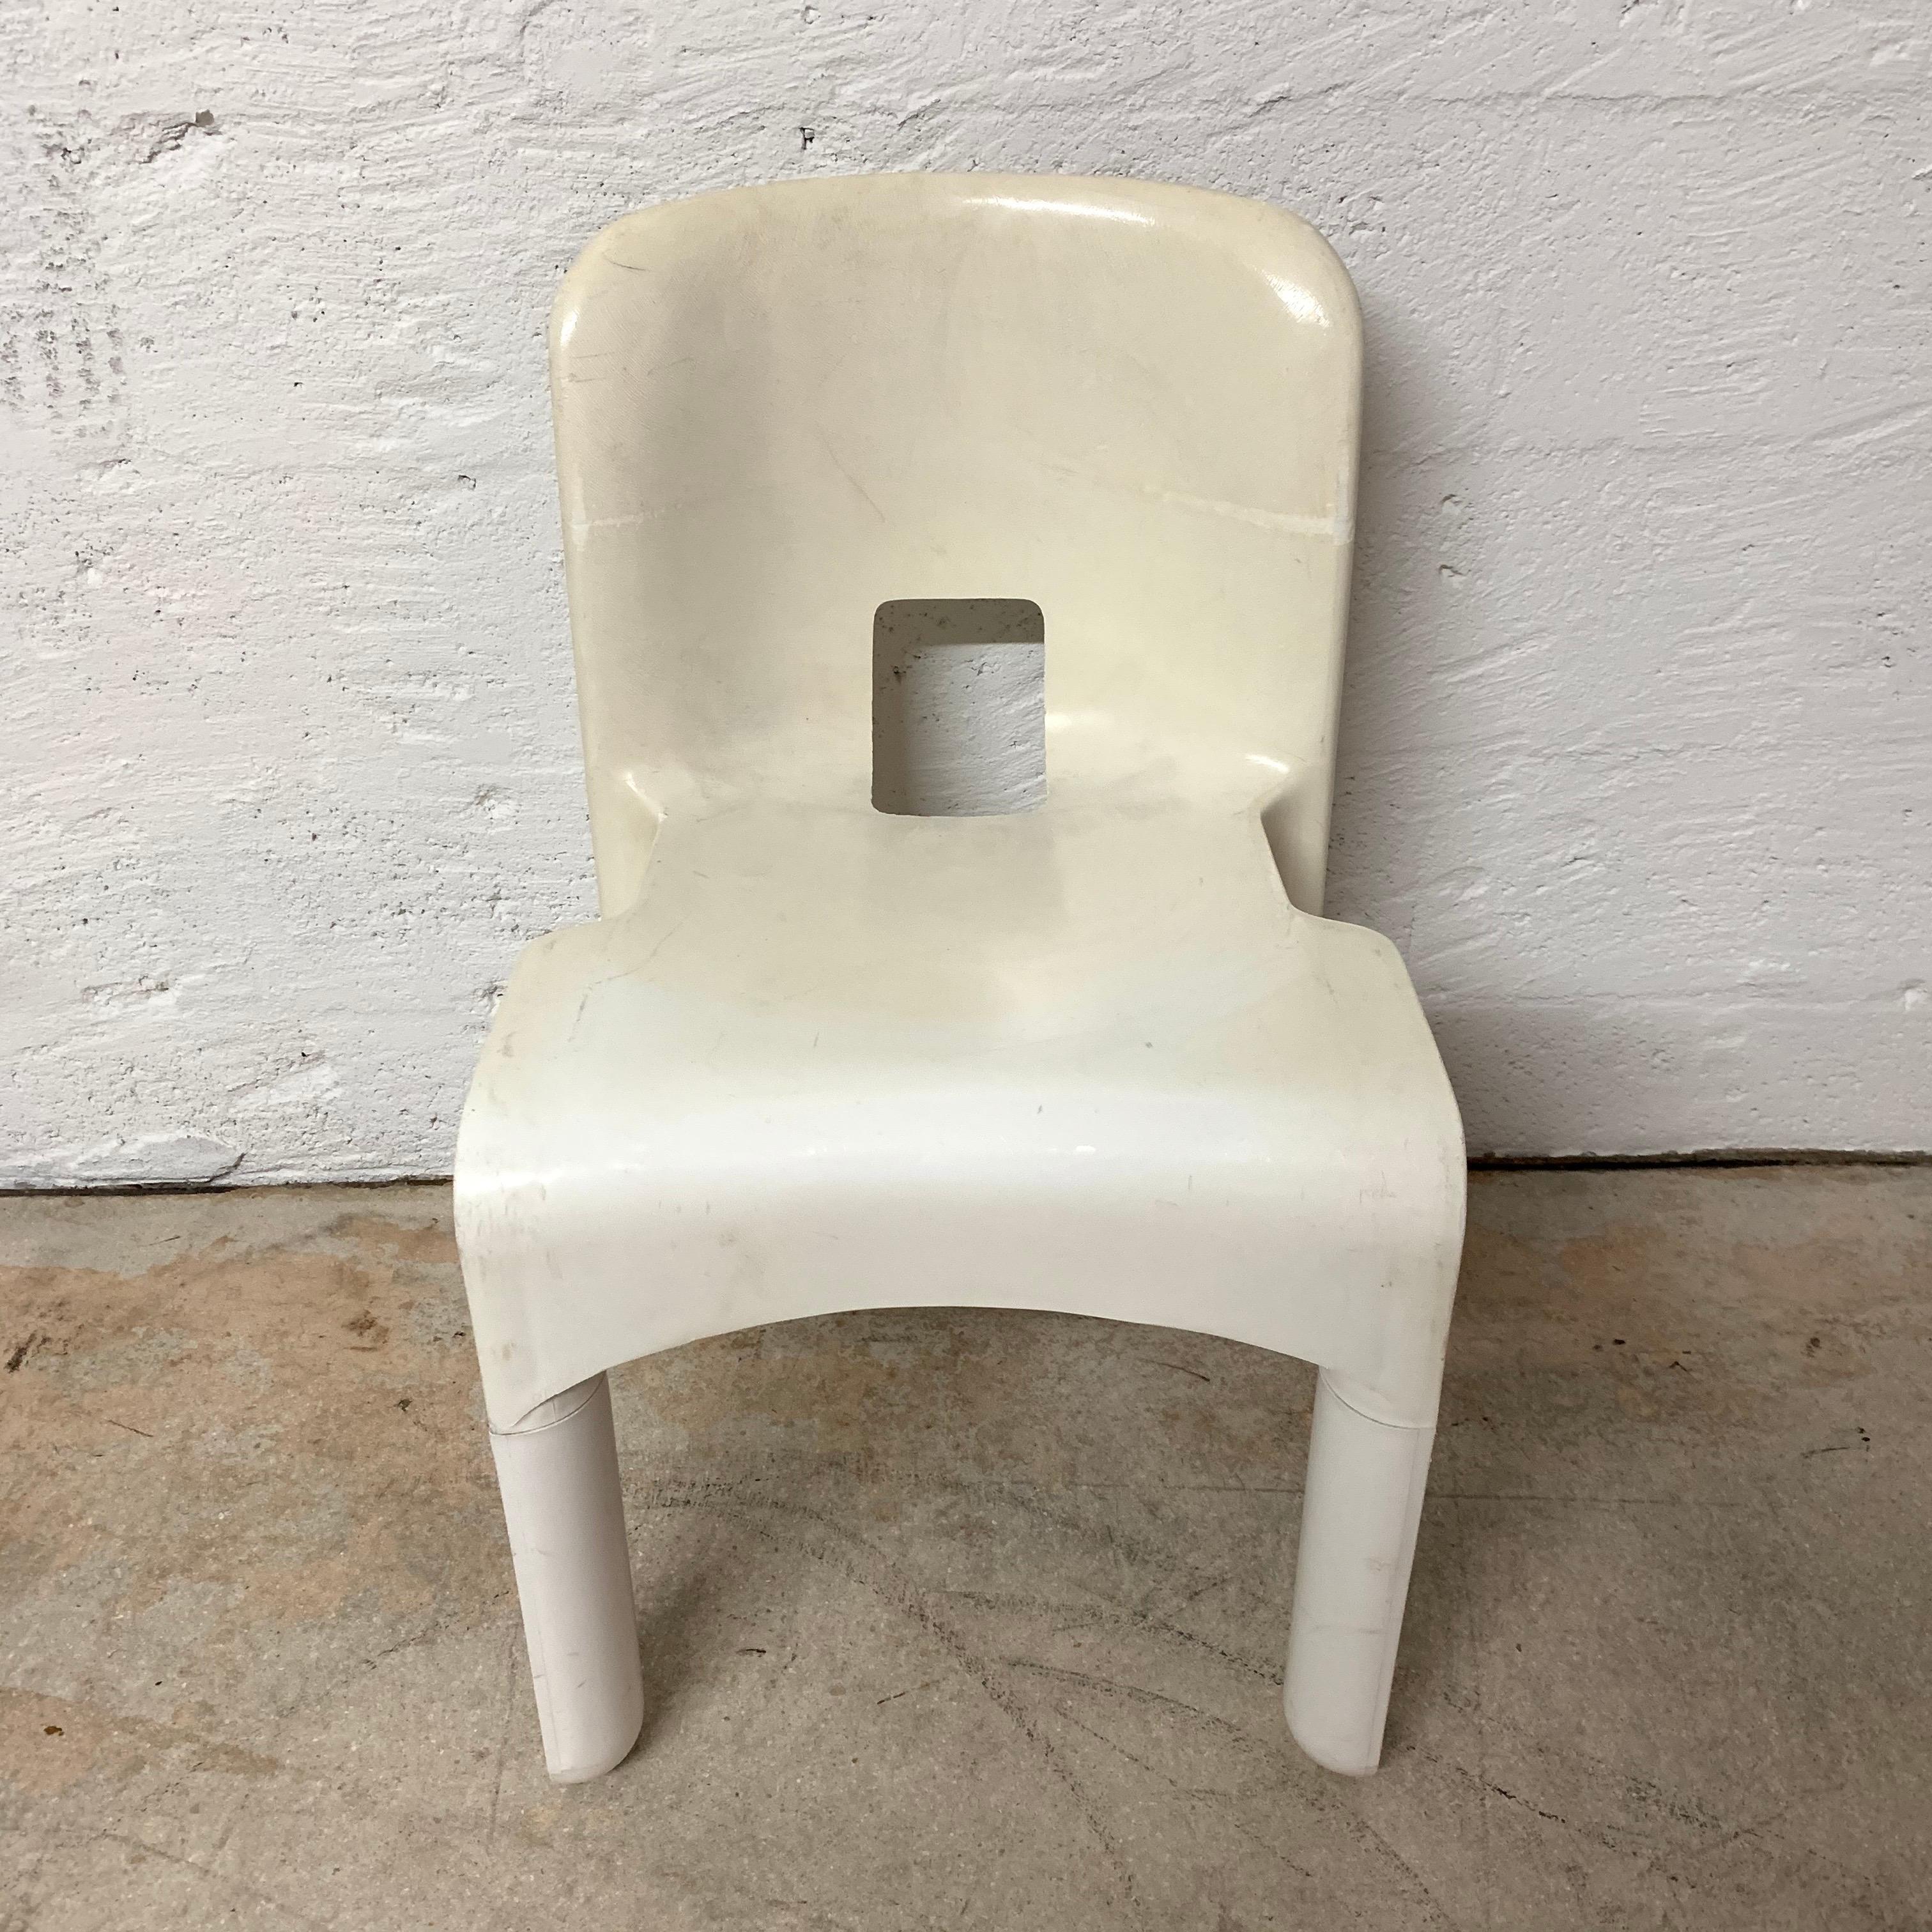 Original Universale Stuhl aus Polycarbonat, entworfen von Joe Colombo für Kartell, Italien, und hergestellt von Beylerian LTD, 1960er Jahre.